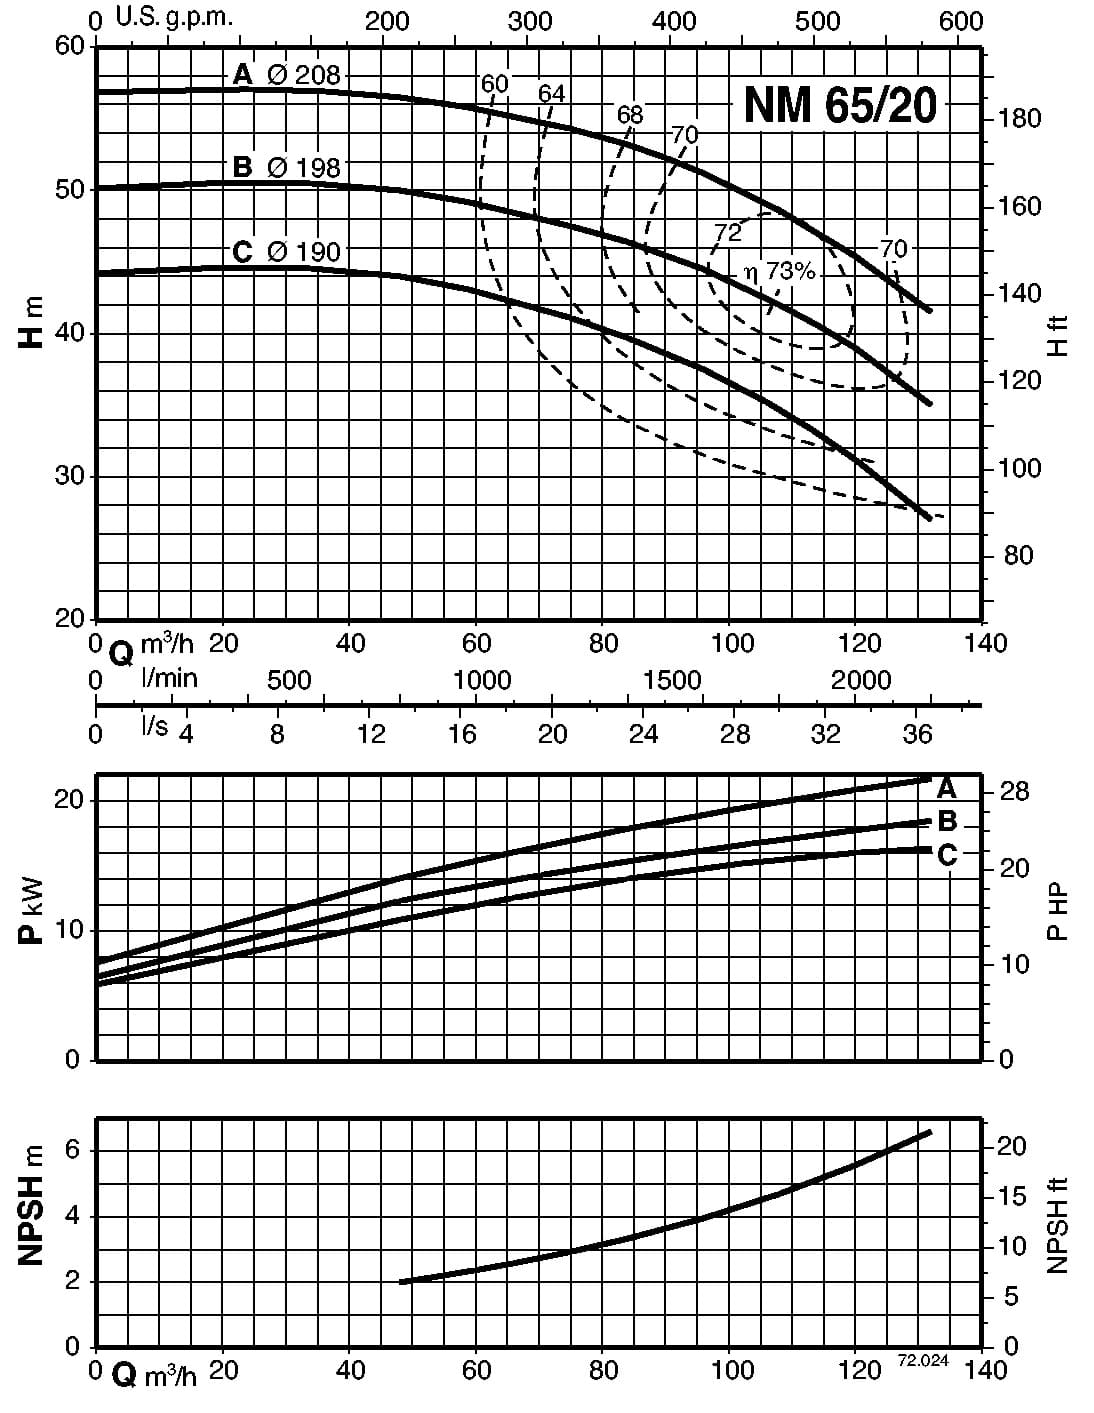  characteristics of pump calpeda B-NM65/200B/A 